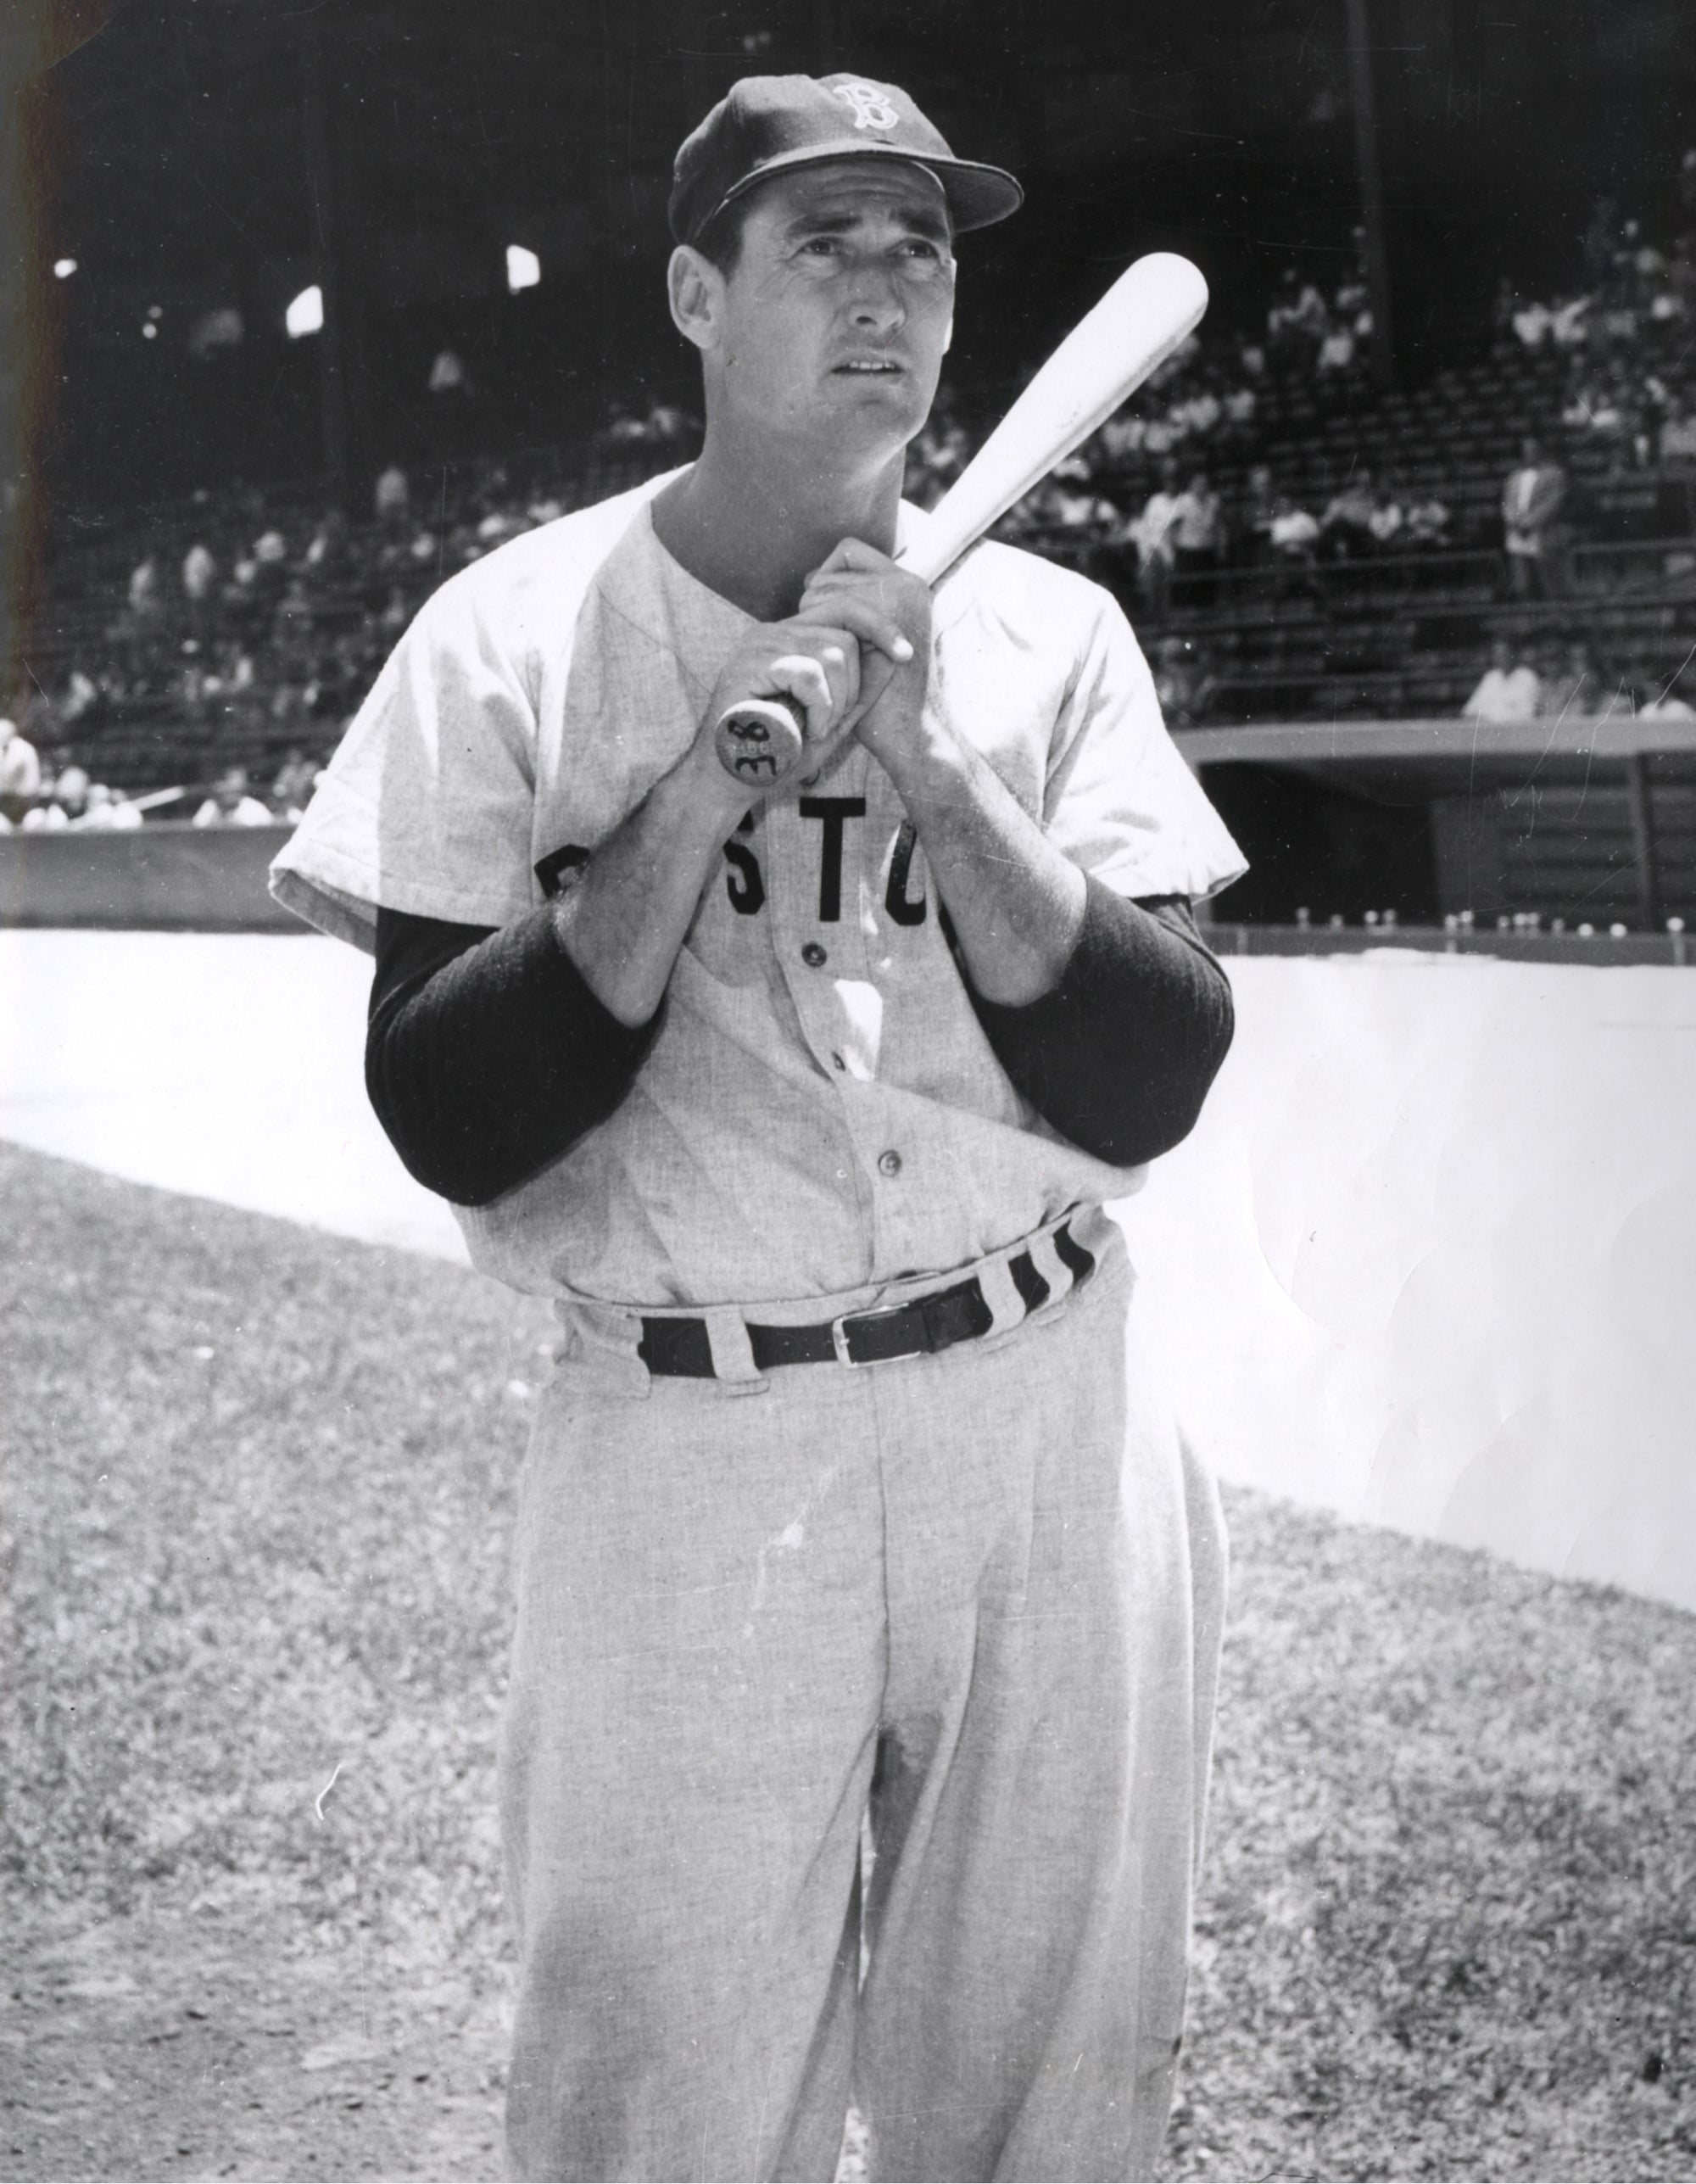 Williams, Ted  Baseball Hall of Fame